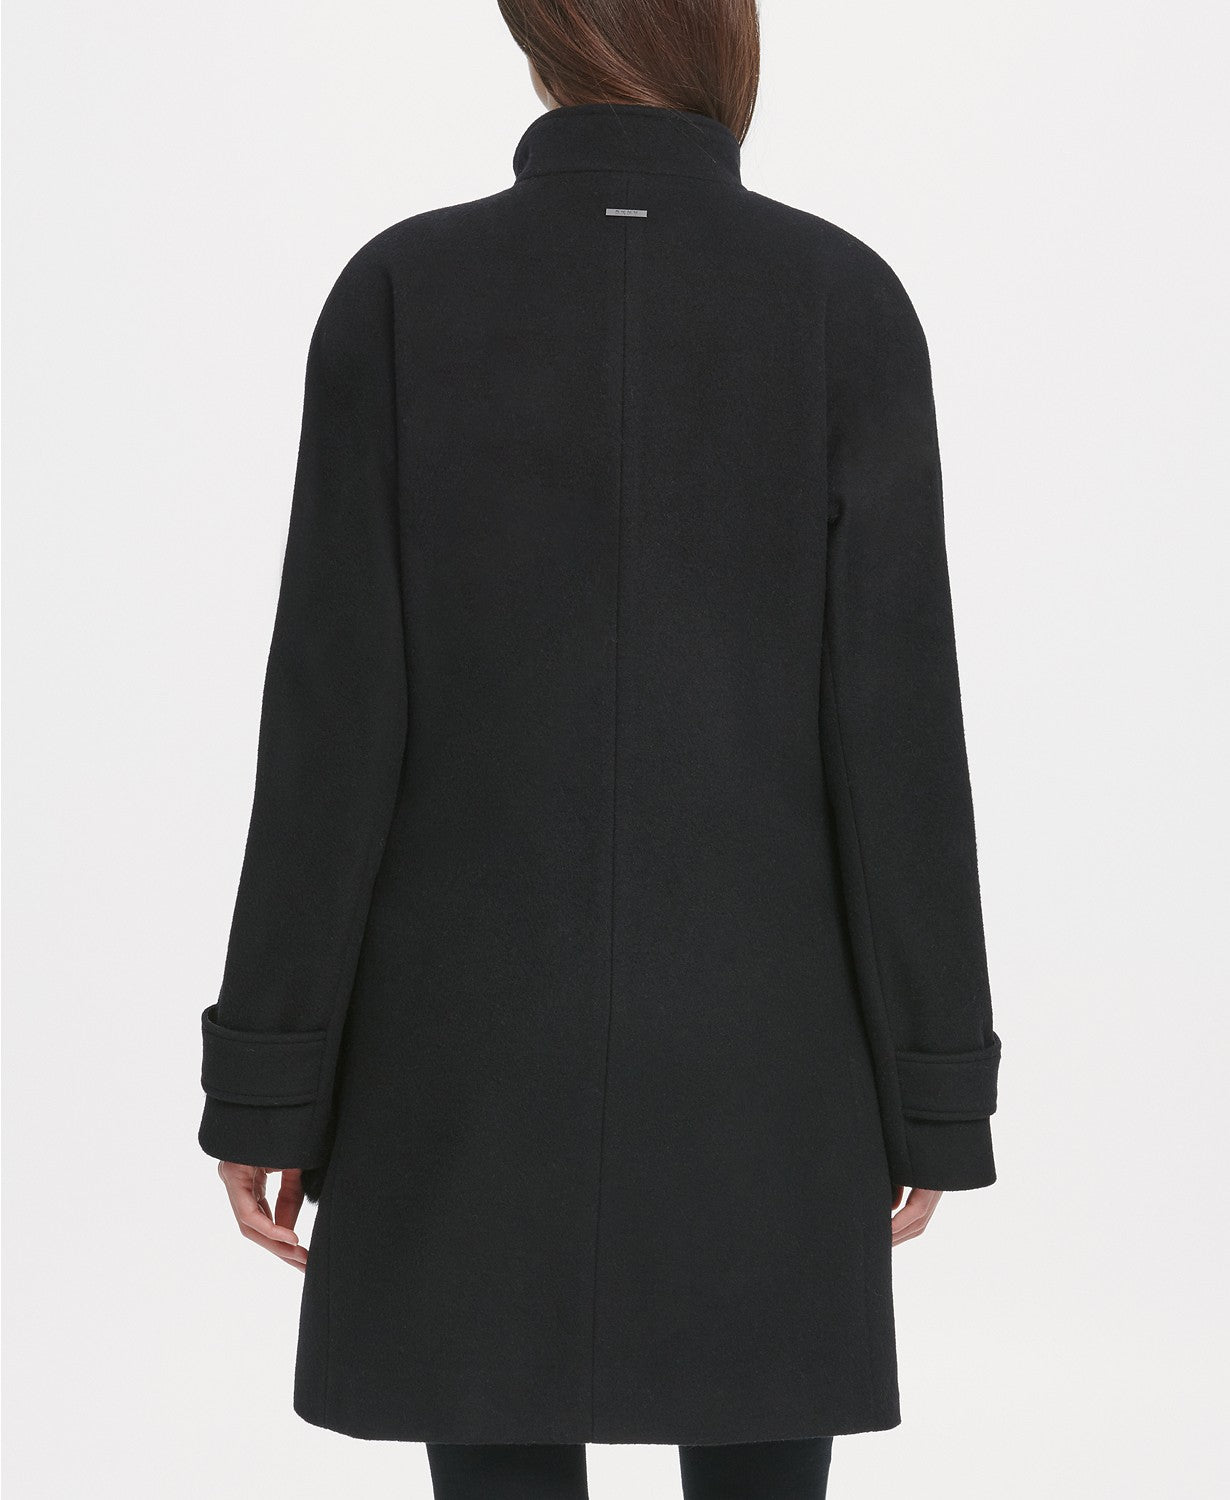 DKNY Womens Faux-Fur-Pocket Walker Coat Large Black Wool